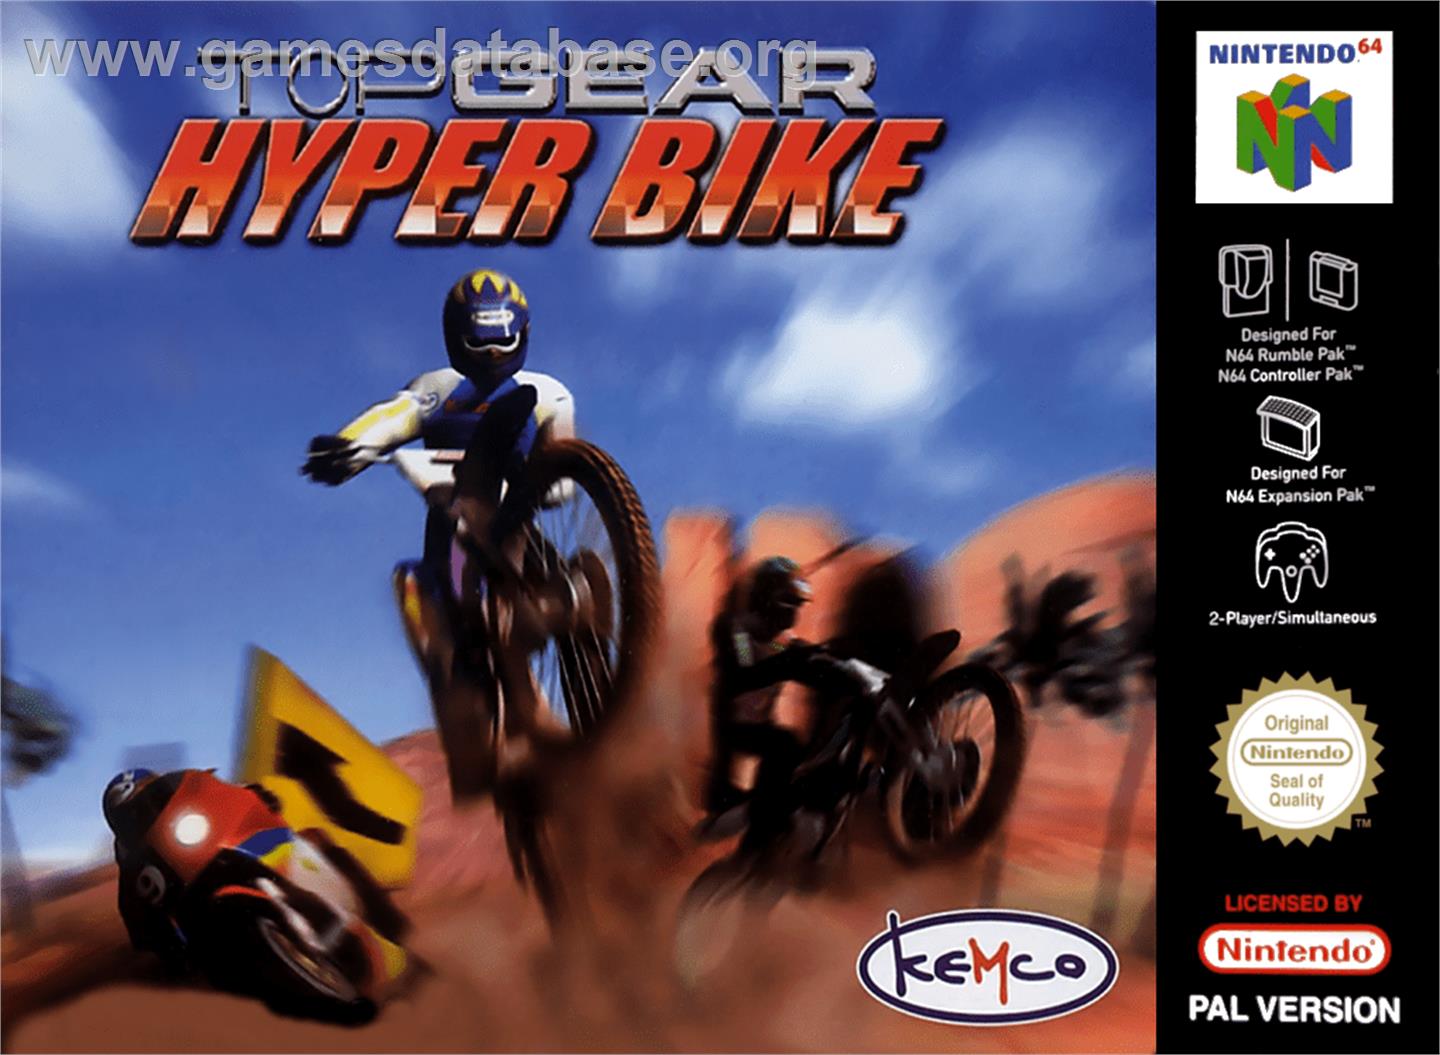 Top Gear Hyperbike - Nintendo N64 - Artwork - Box